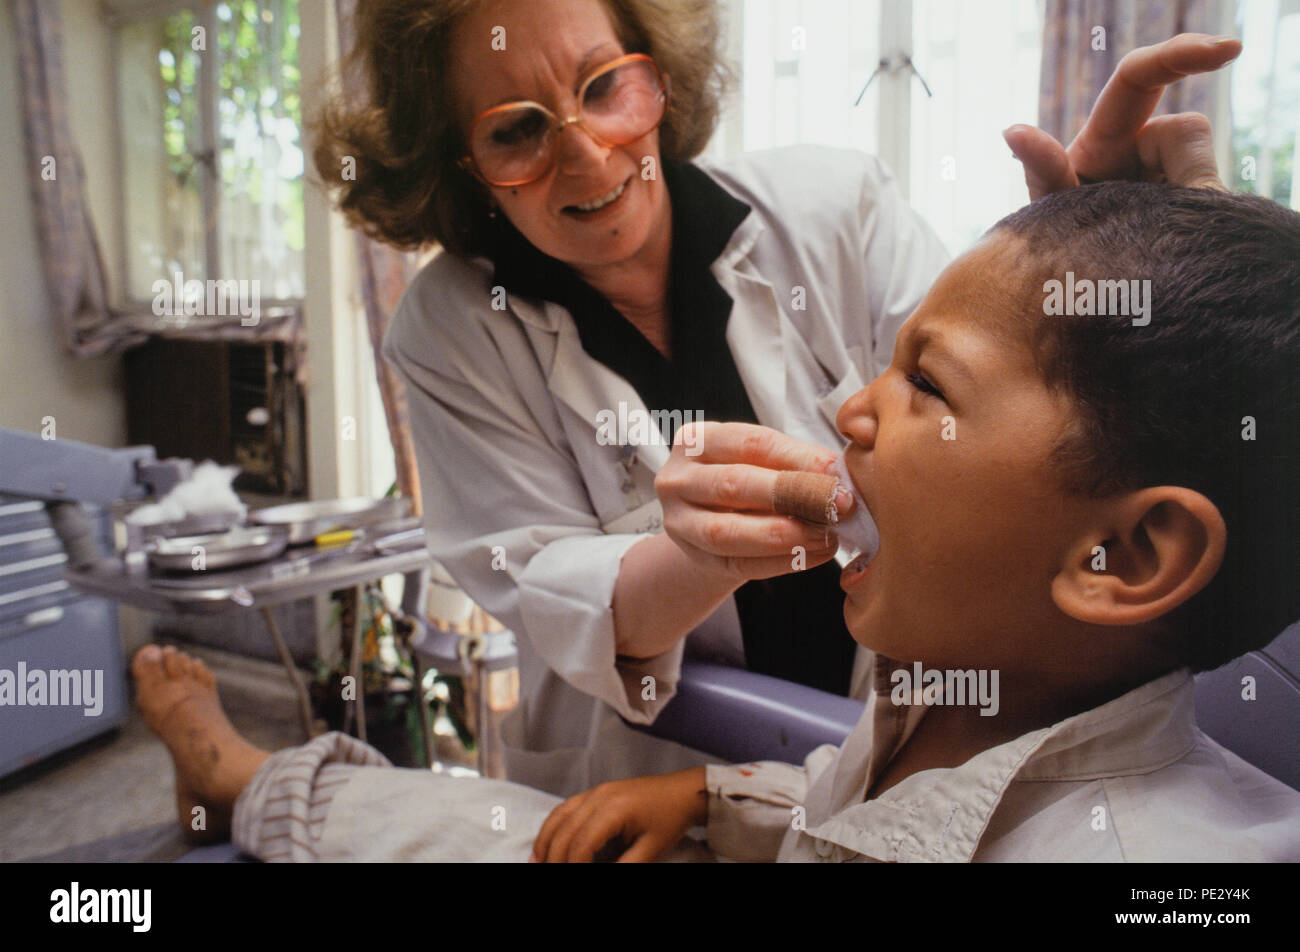 Oktober 1995 - Bagdad, Irak - ein Junge, ein Zahn am Zahnarzt, wo der Mangel an dringend benötigte medizinische Versorgung und Ausrüstung der Zusammenbruch des Gesundheitswesens im Irak wegen der UN-Sanktionen aufgrund der irakischen Invasion Kuwaits, vor allem Einfluss auf Neugeborene und Babys gesehen hat gezogen. Stockfoto